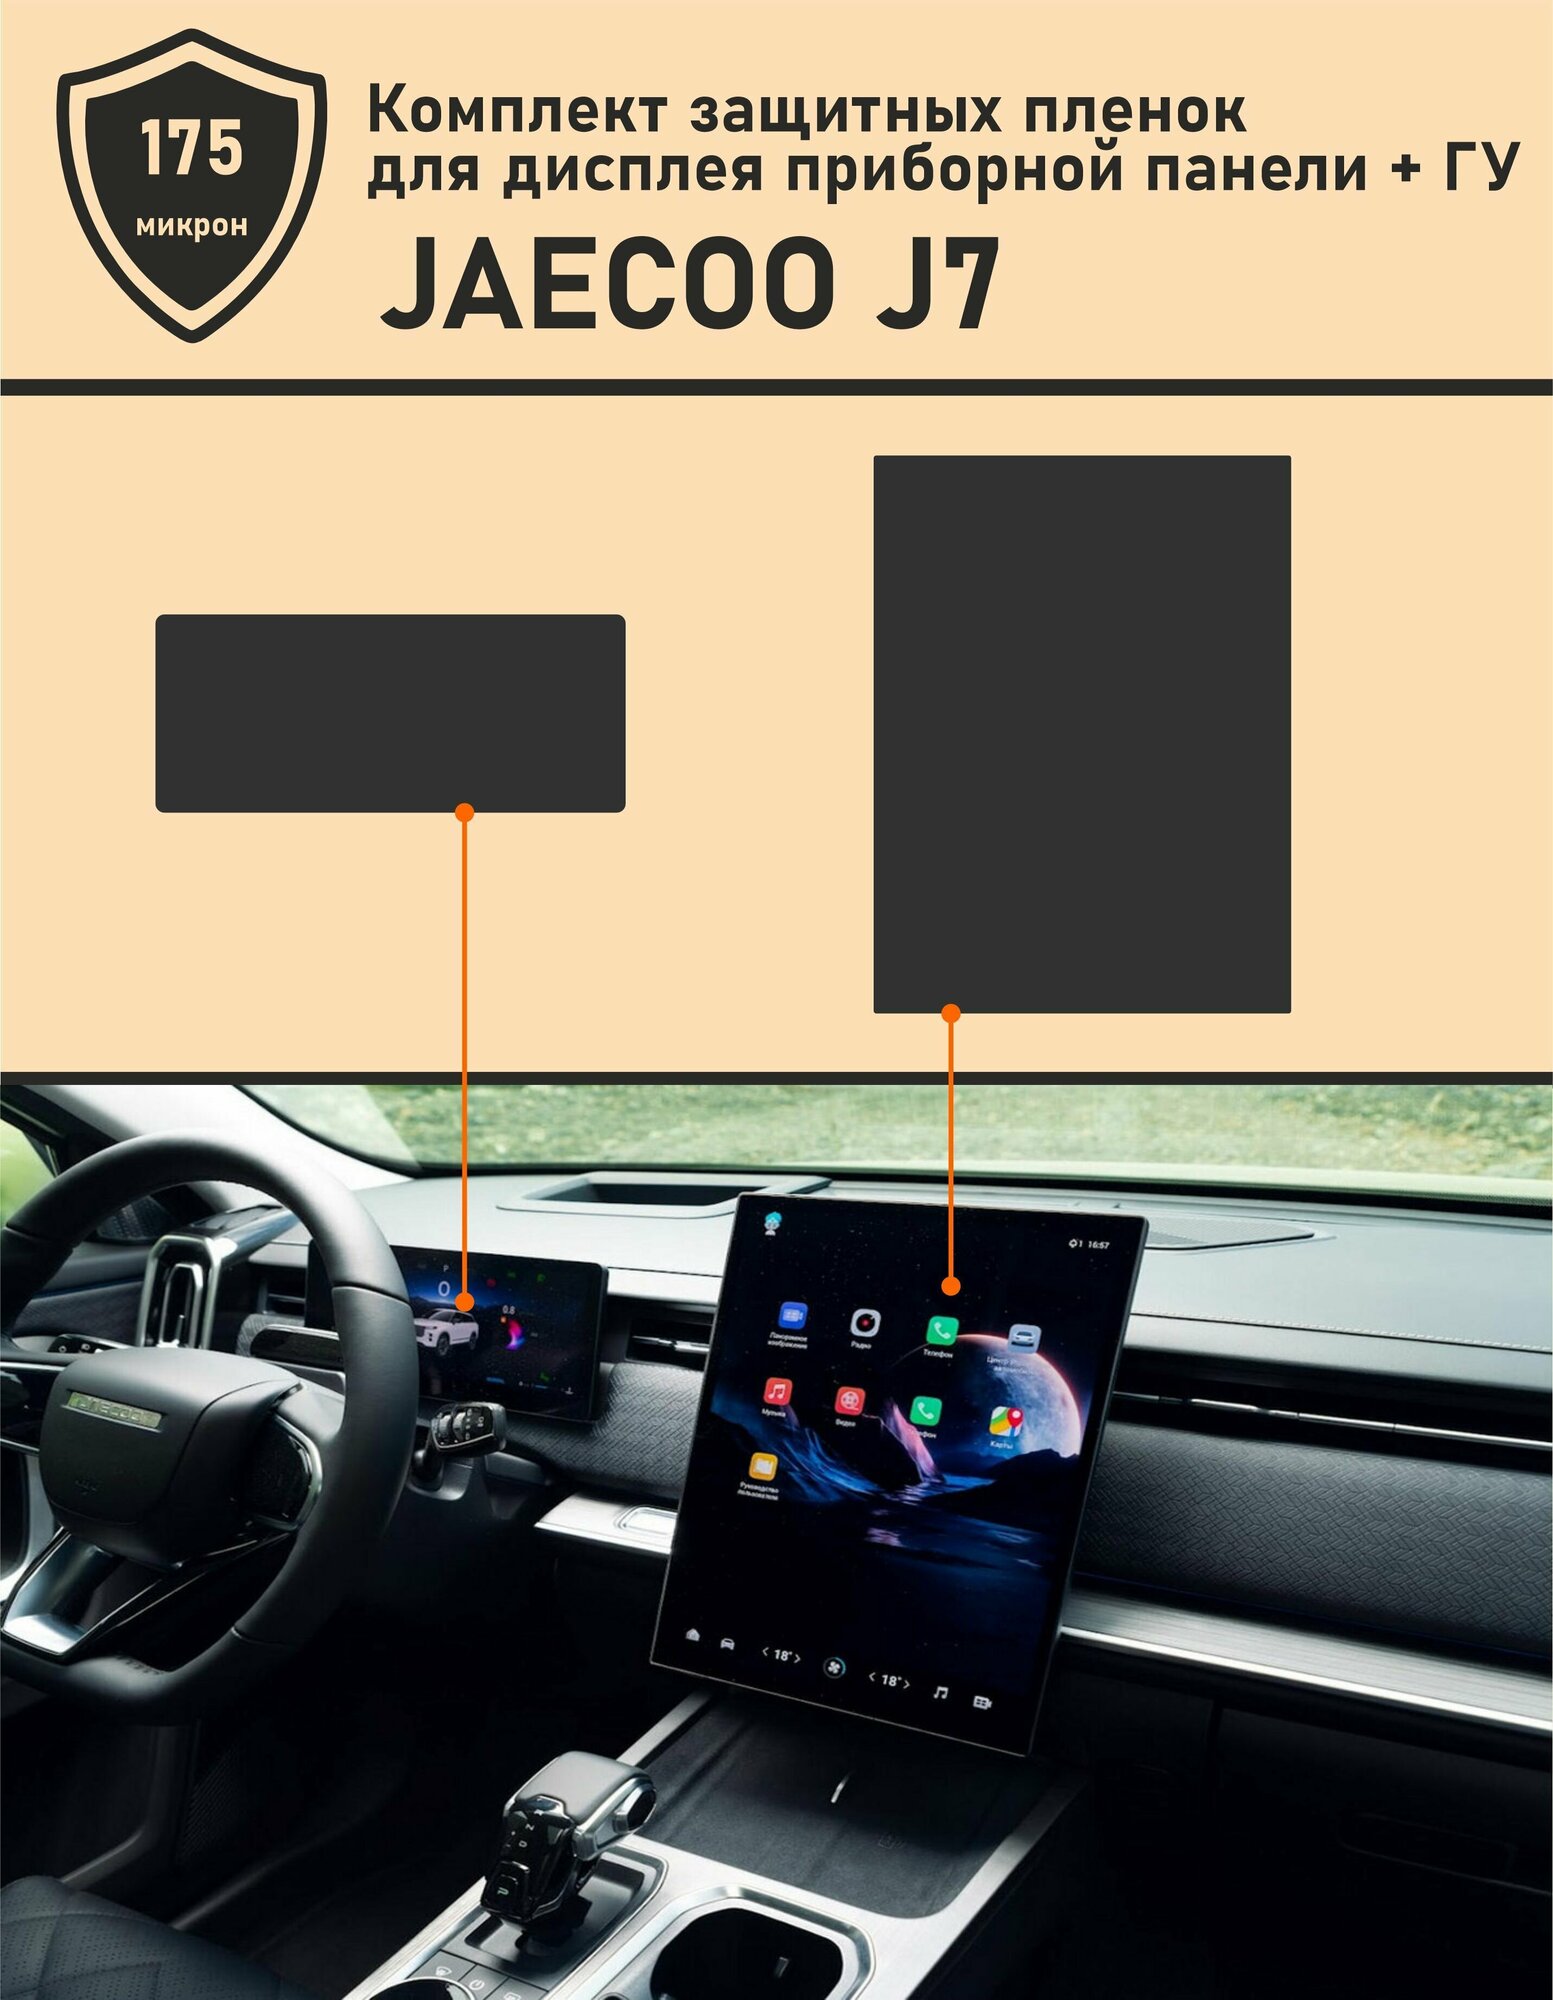 JAECOO J7/защитная пленка для ГУ + приборная панель 15.5